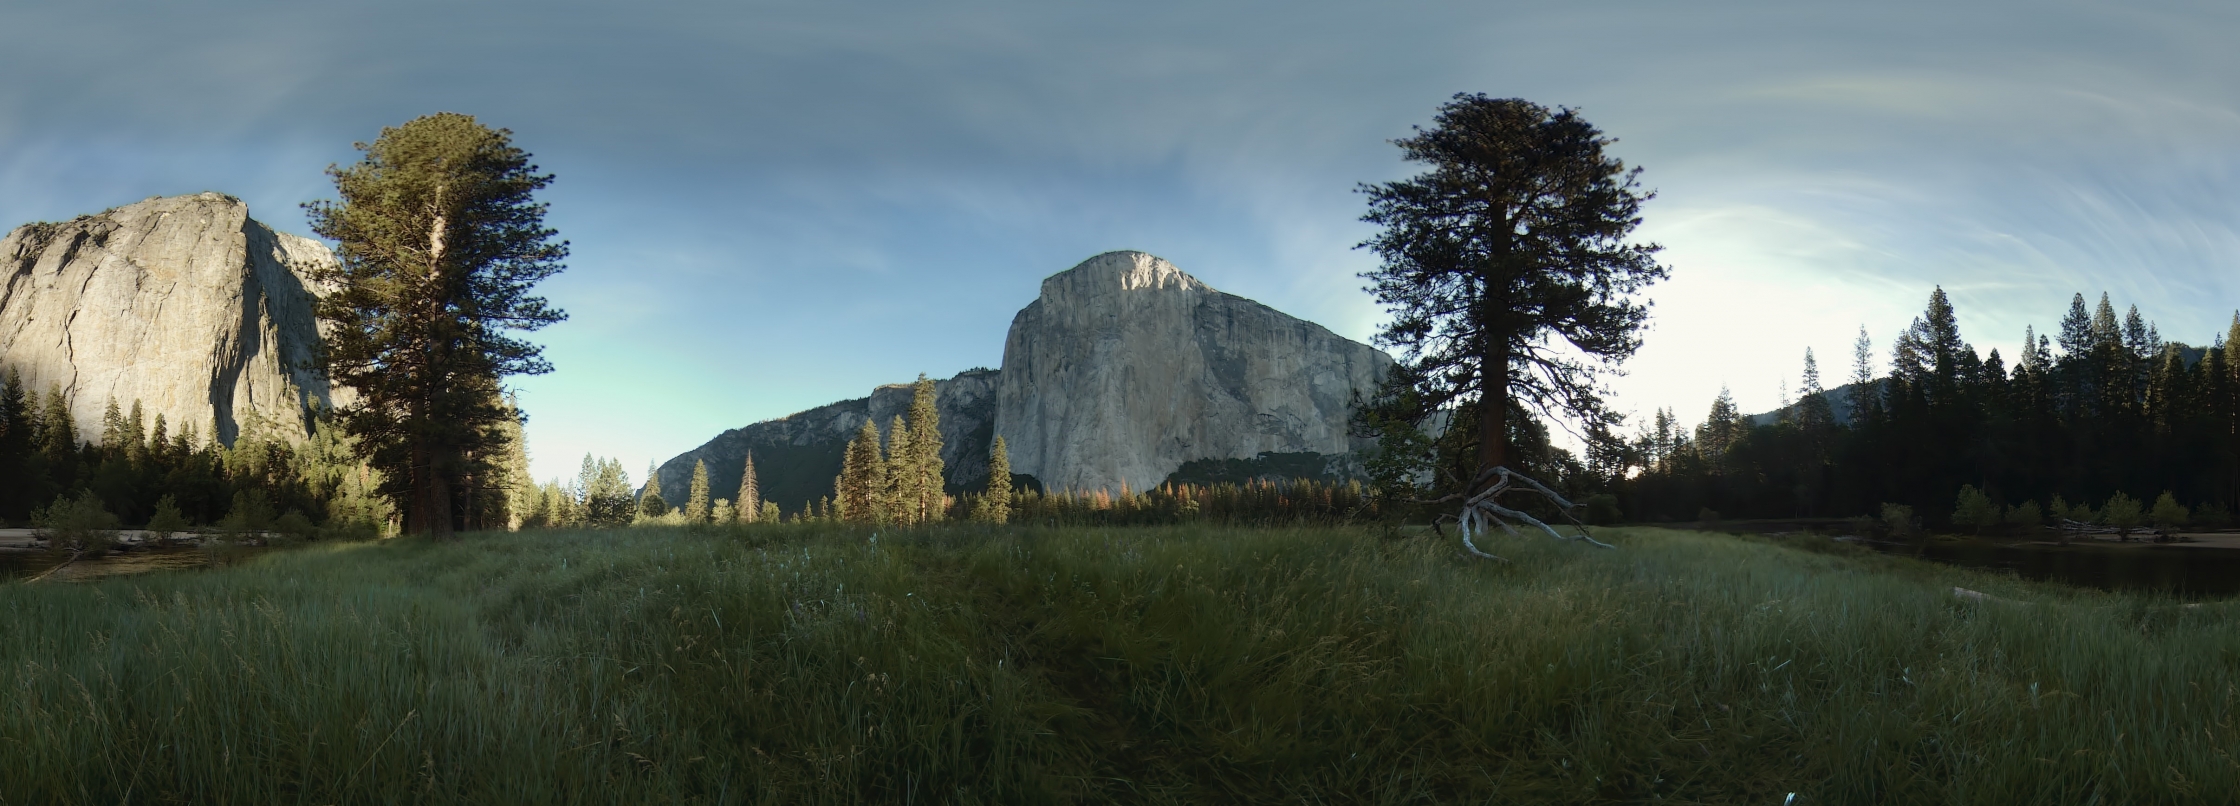 El Cap Meadow in Yosemite 